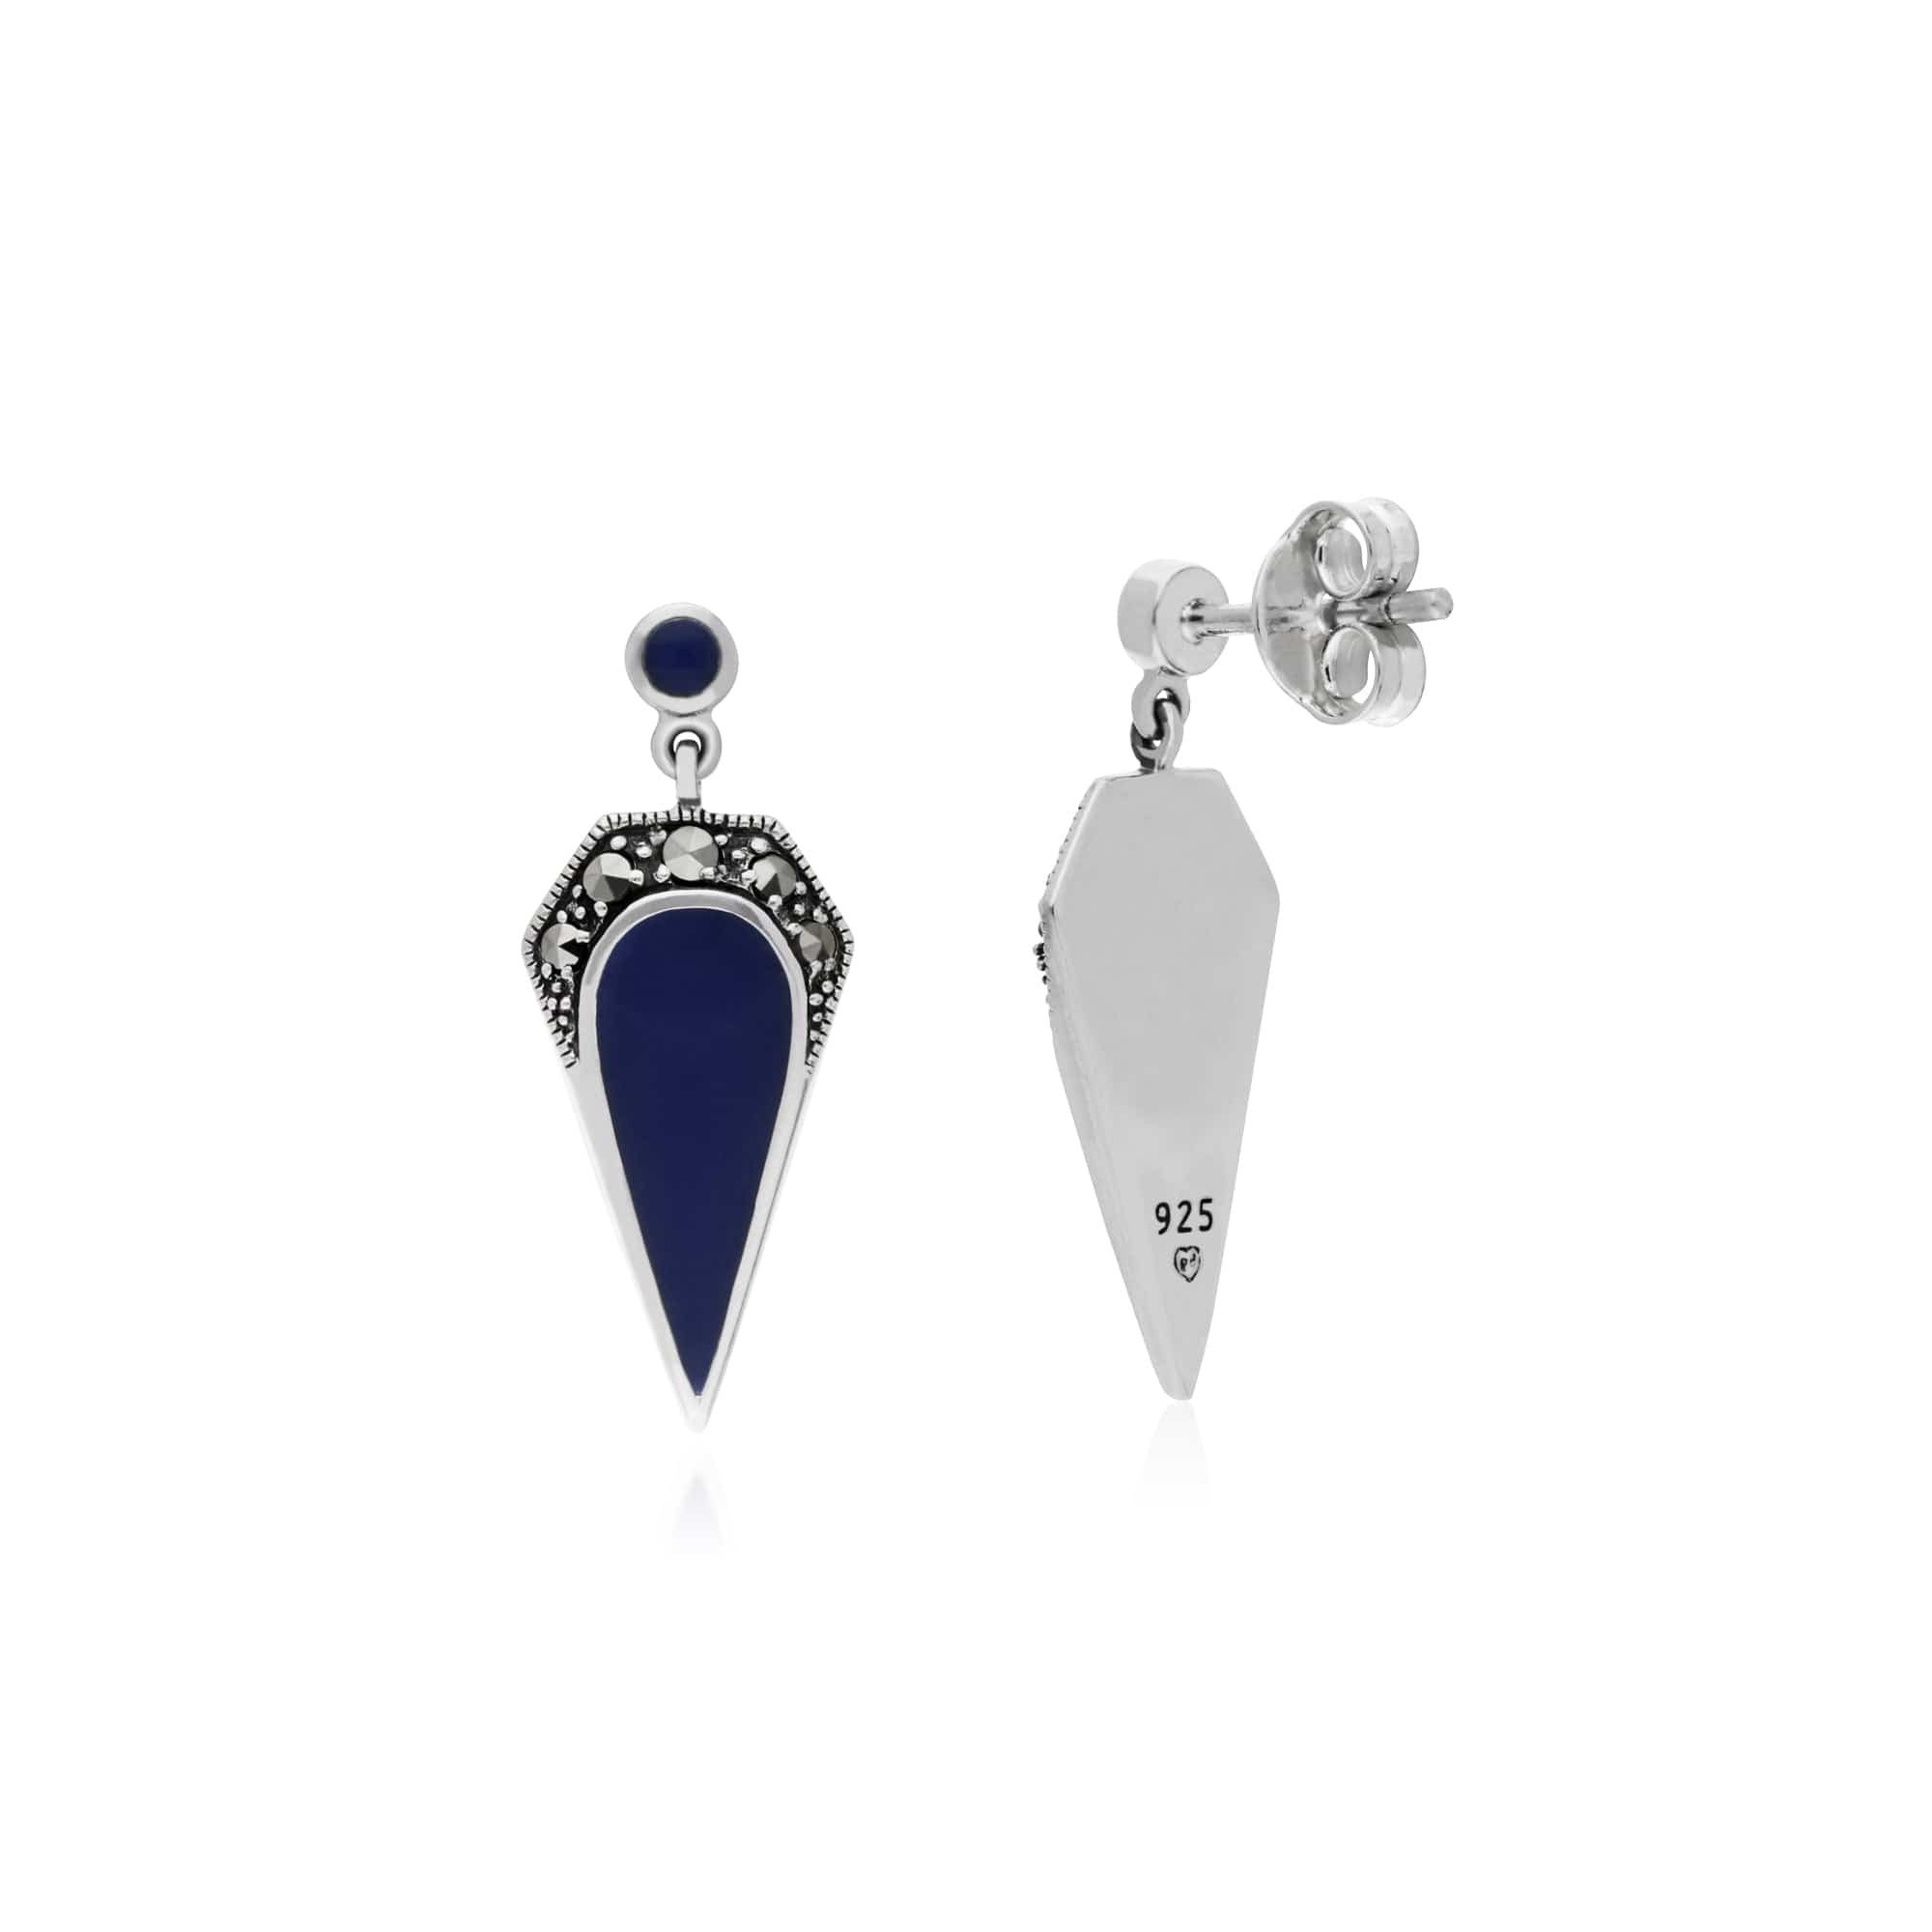 Gemondo Sterling Silver Marcasite & Blue Enamel Drop Earrings - Gemondo